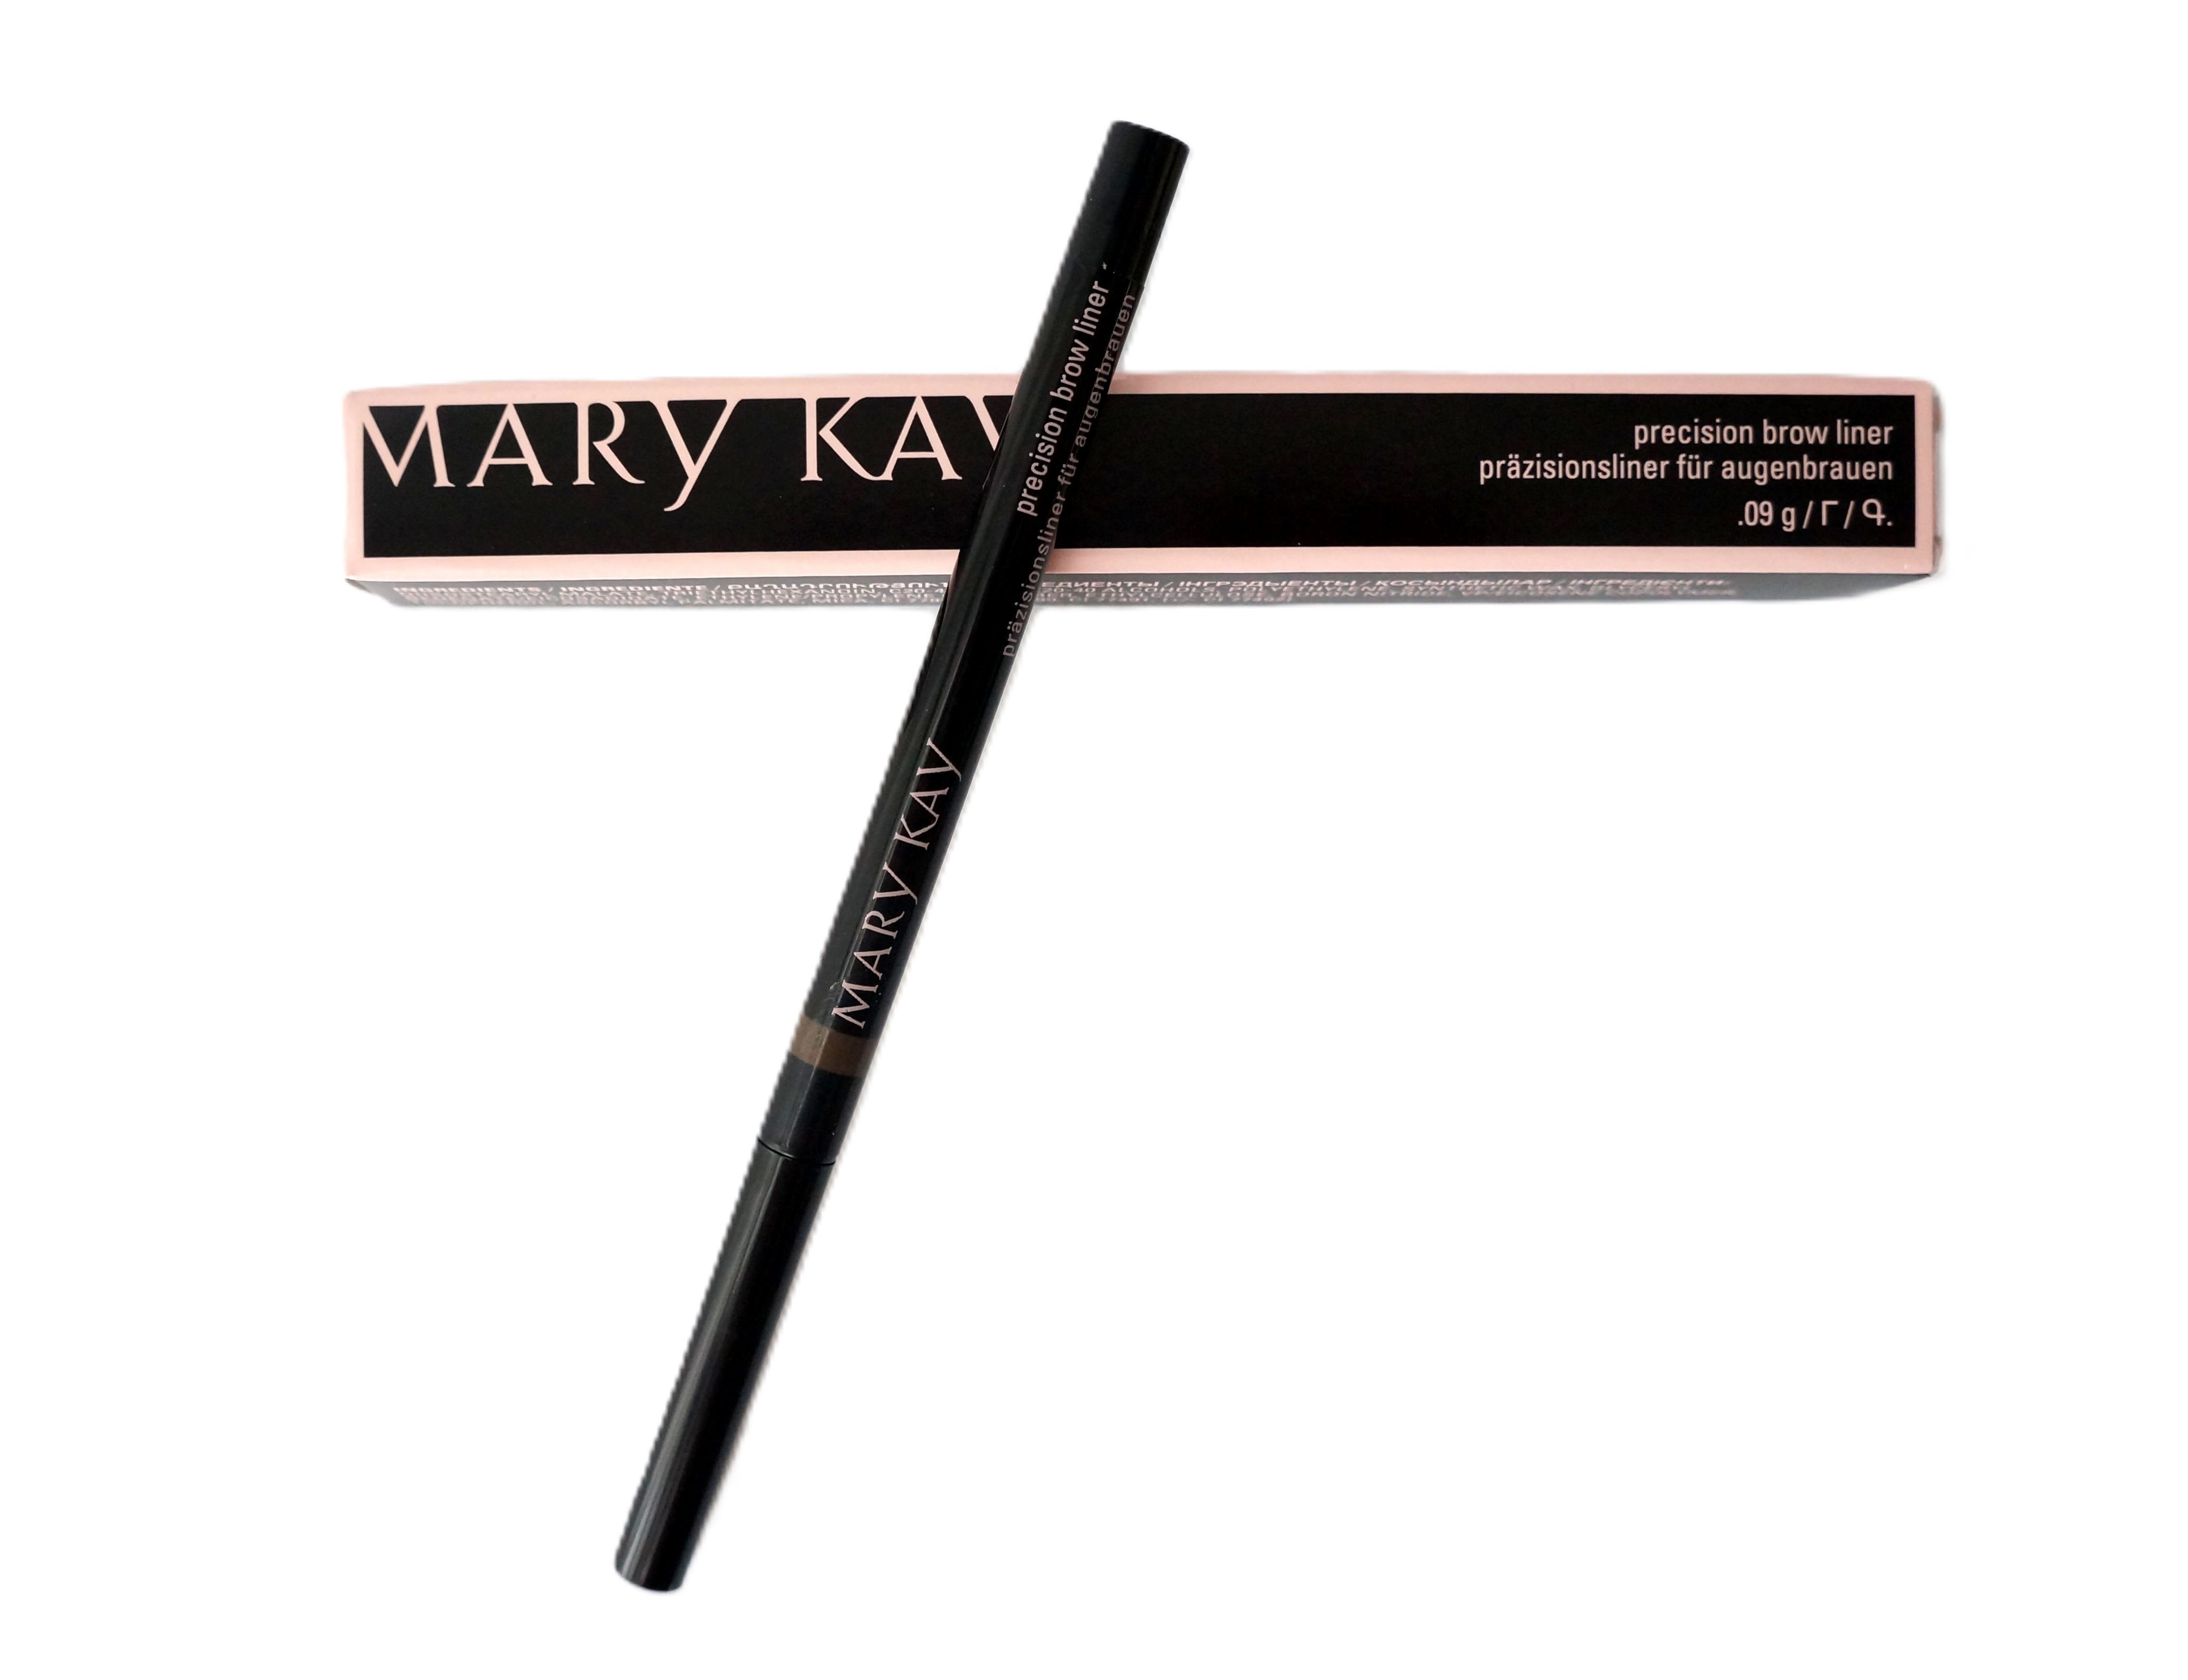 Mary Kay Augenbrauen-Stift Precision brow liner präzisionsliner für Augenbrauen 0,09g